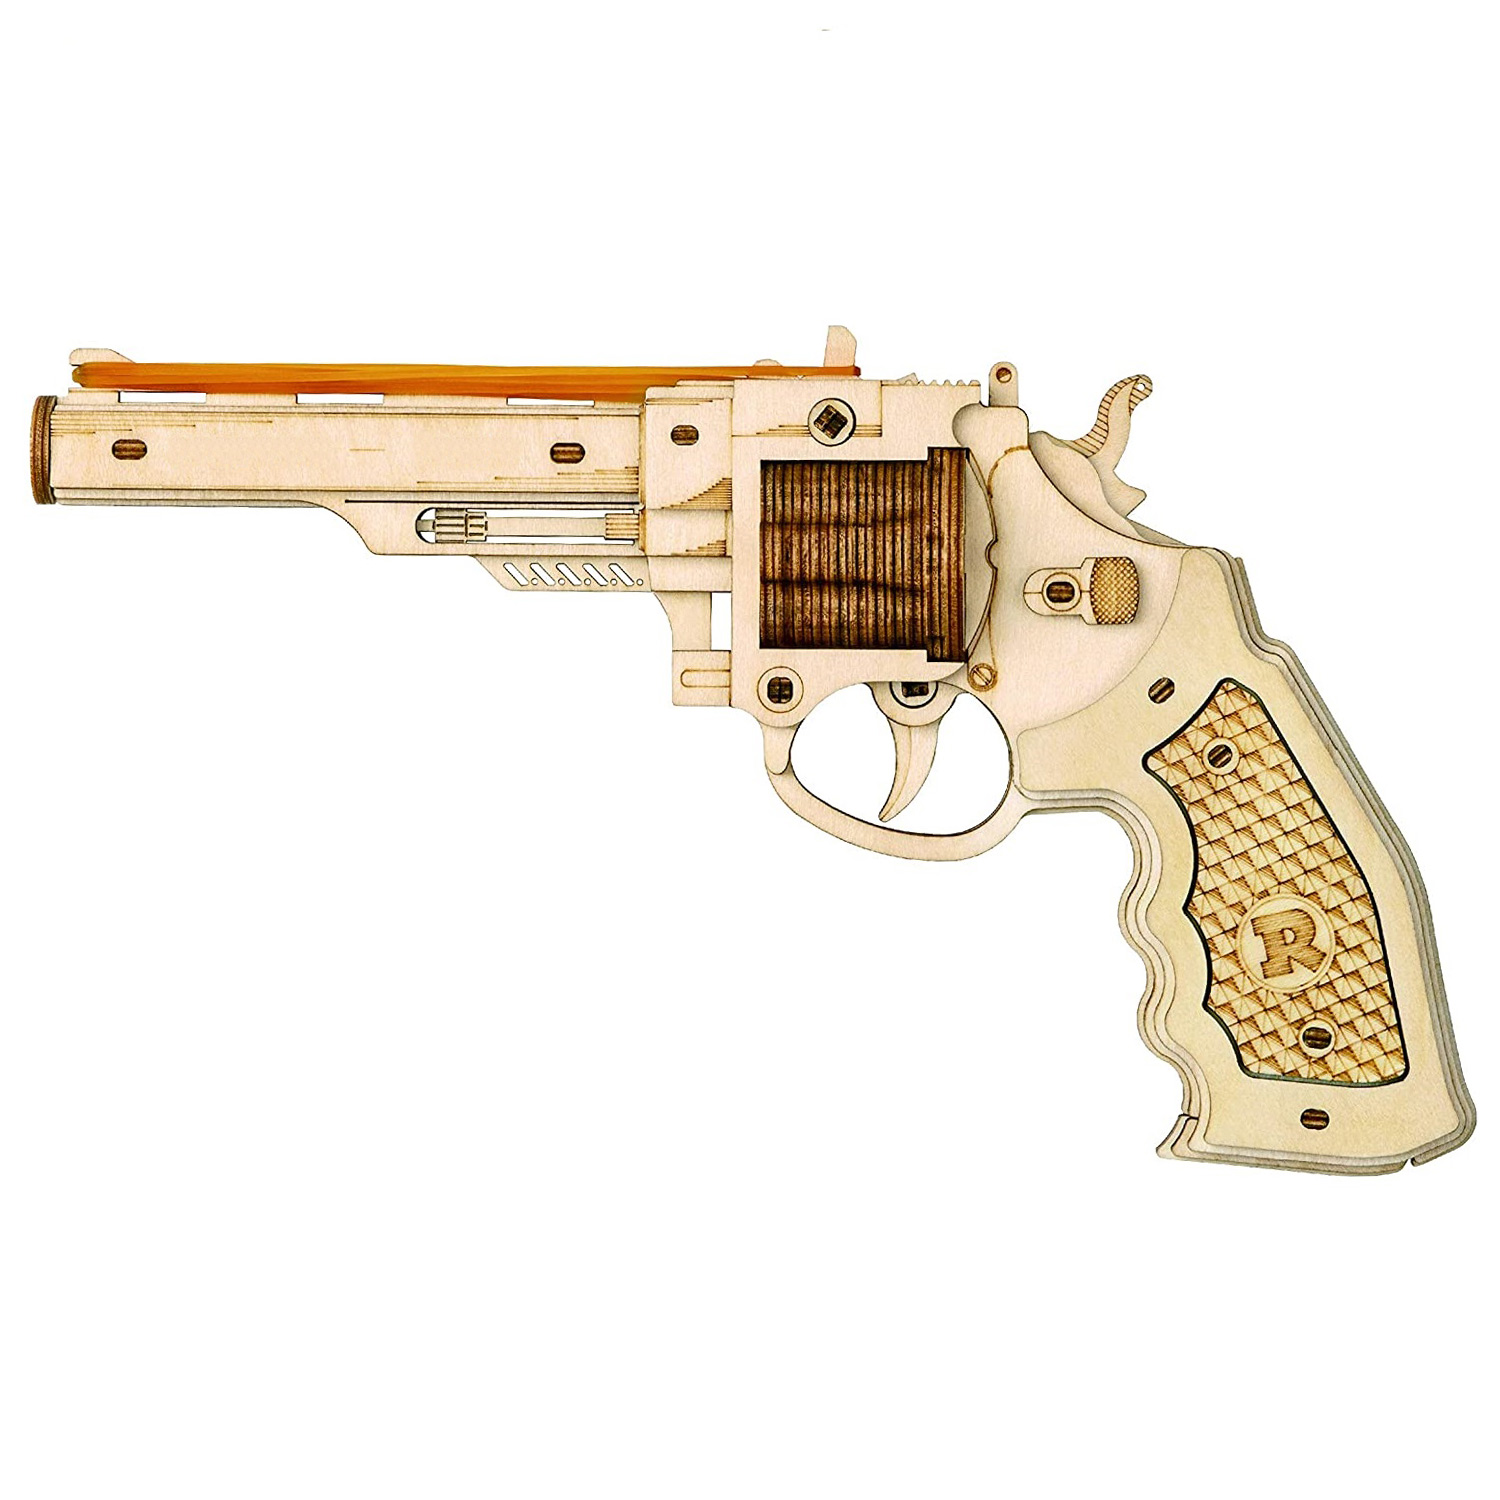 Rokr Revolver Wooden Model Kit